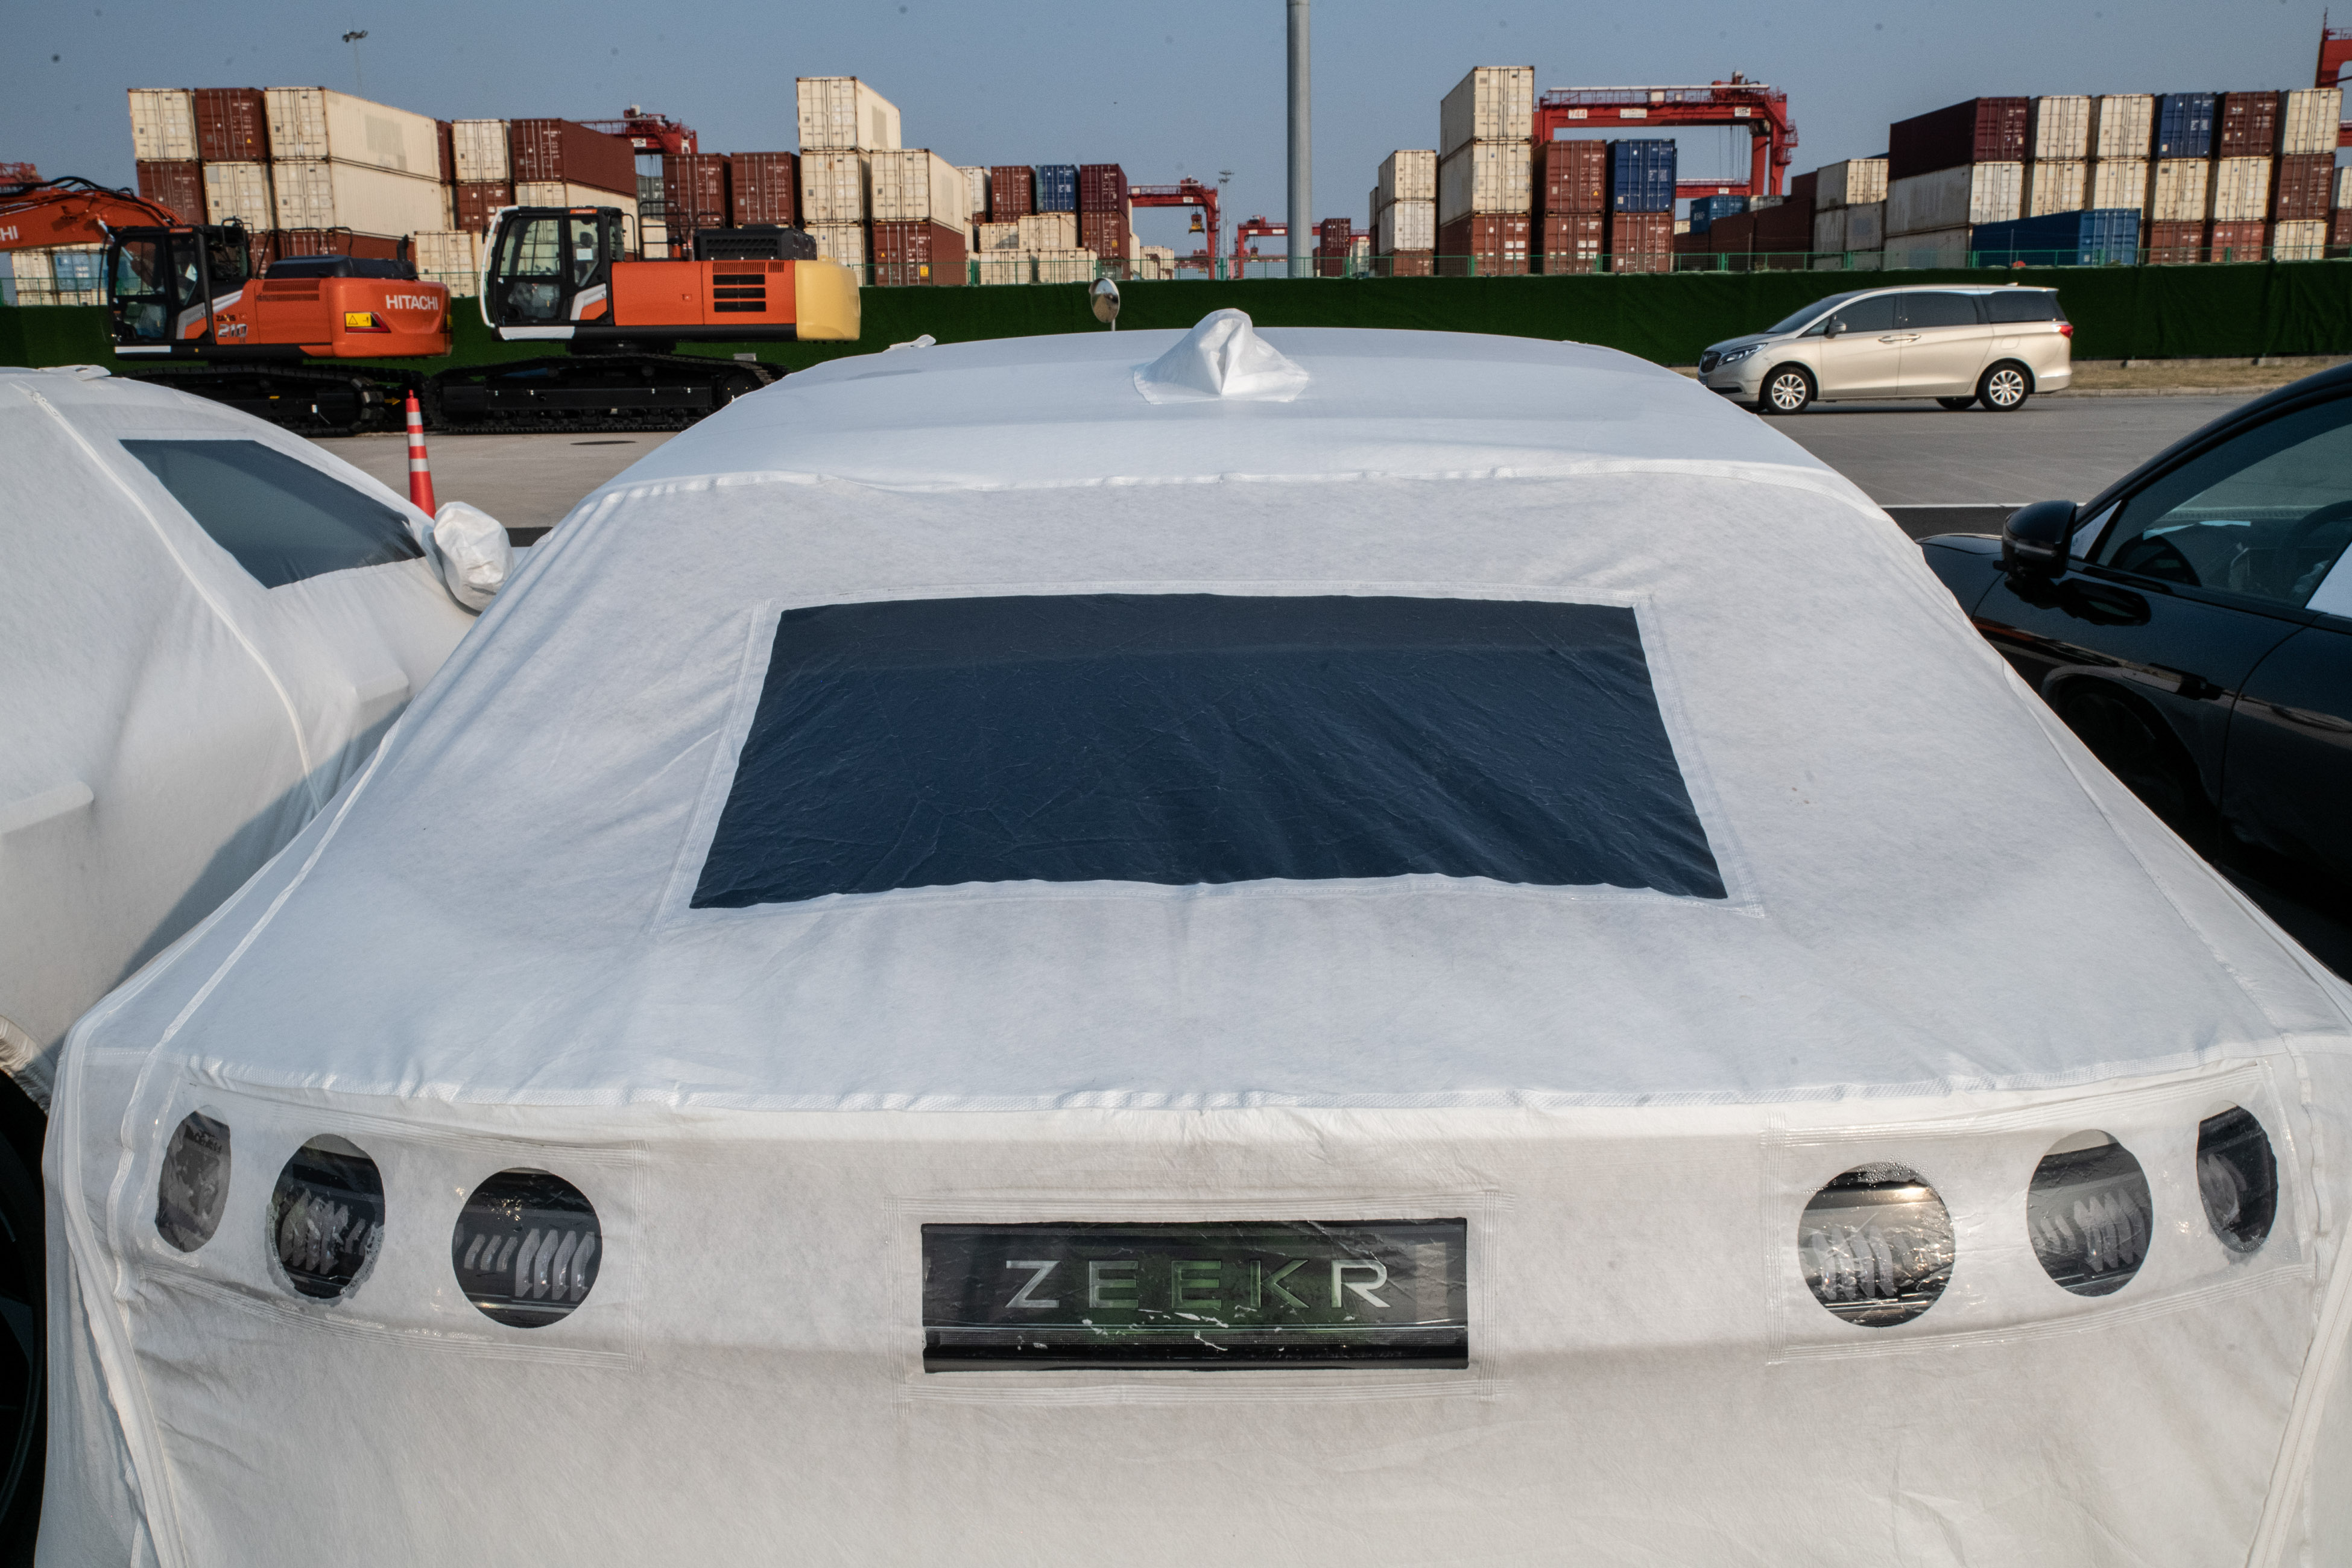 Li Auto (NASDAQ: LI) – the Latest Chinese EV Maker to List in the